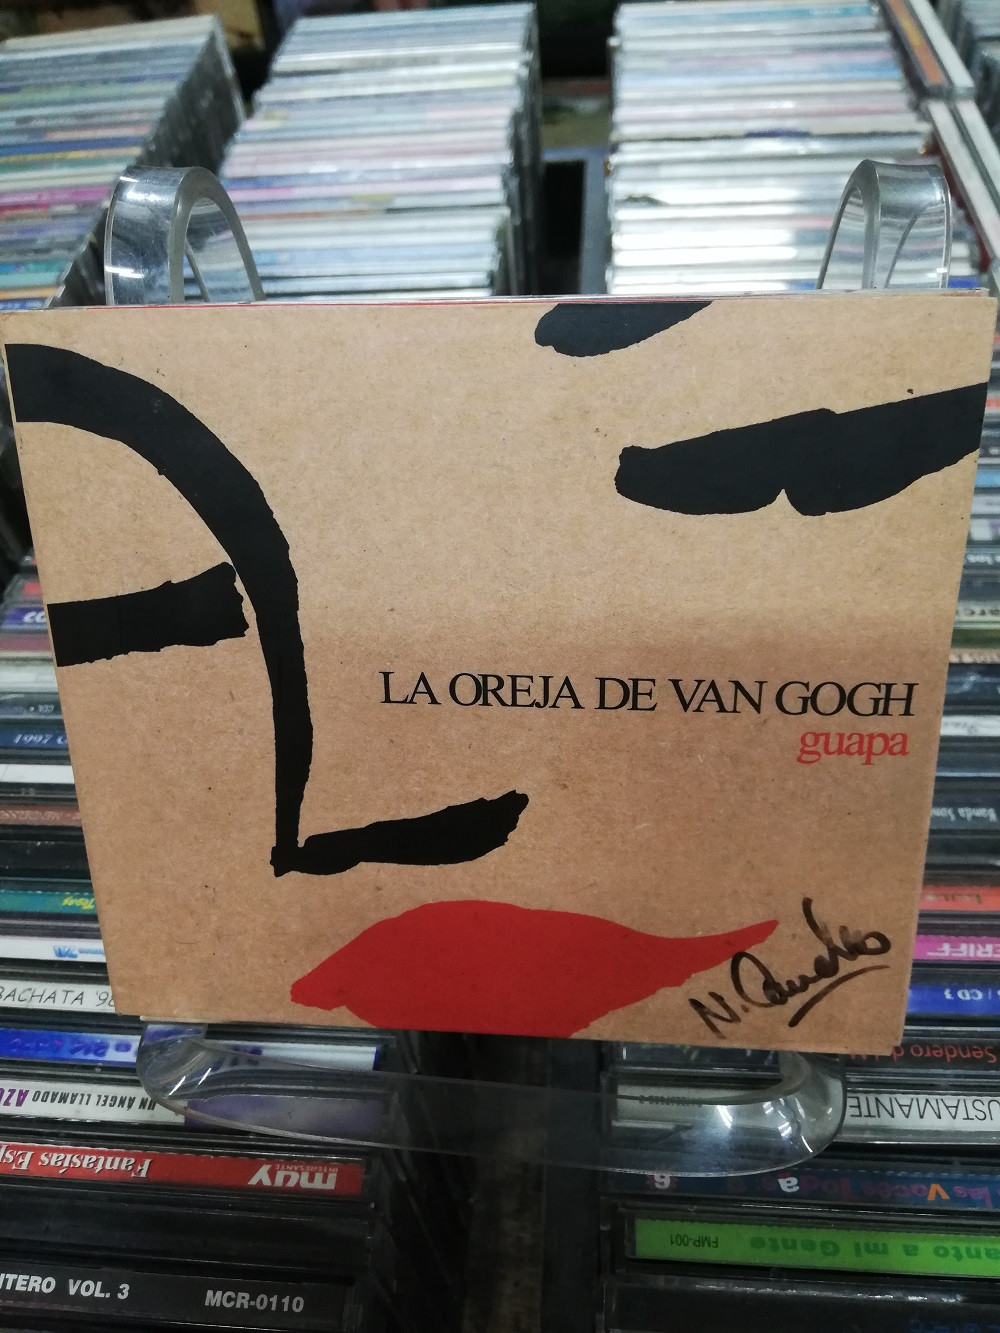 Imagen CD + DVD LA OREJA DE VAN GOGH - GUAPA